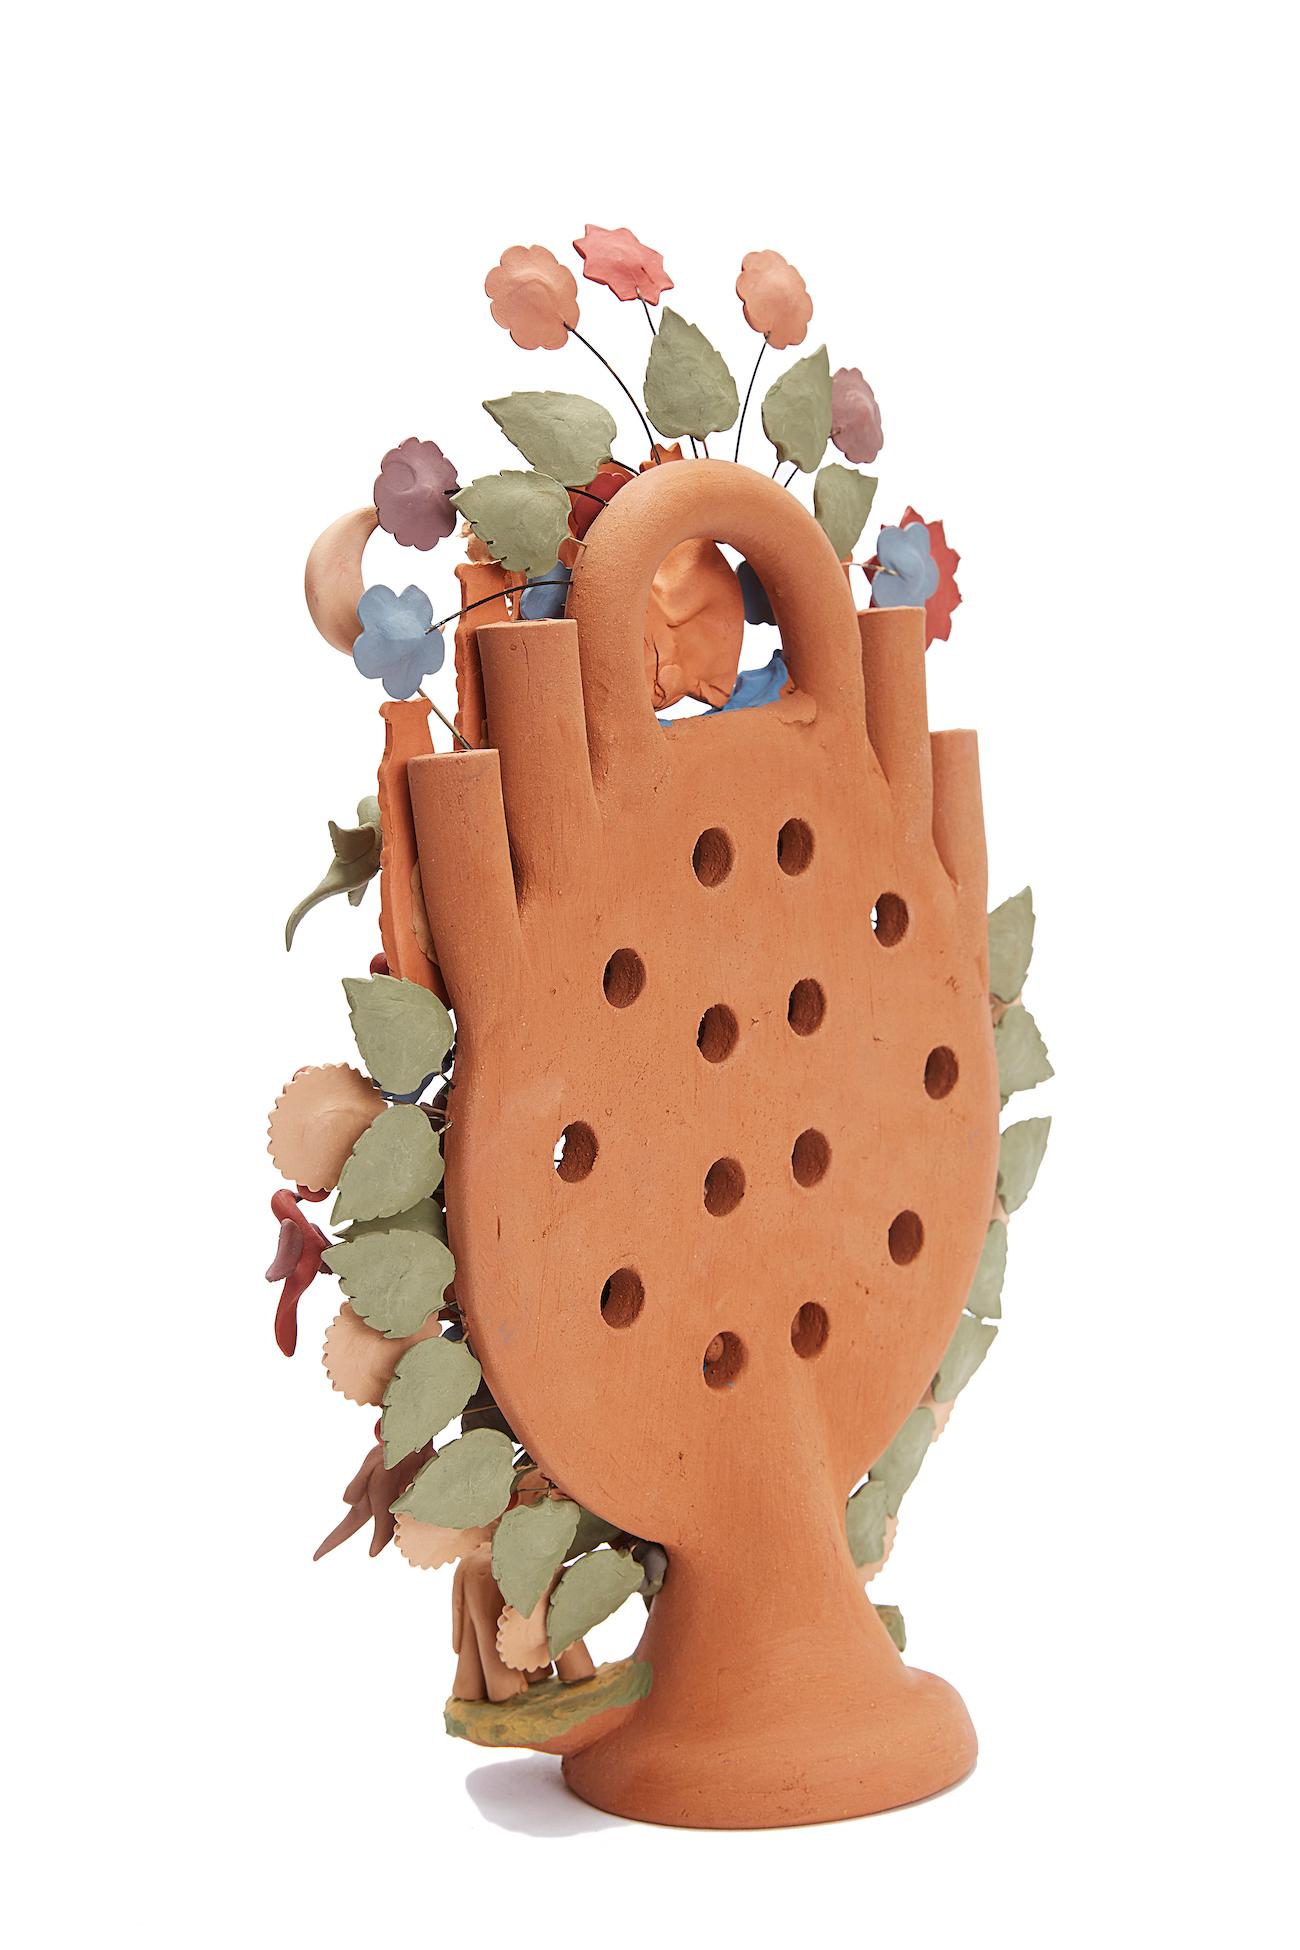 Arbol de la vida -  Tree of life  / Ceramics Mexican Folk Art Clay 6